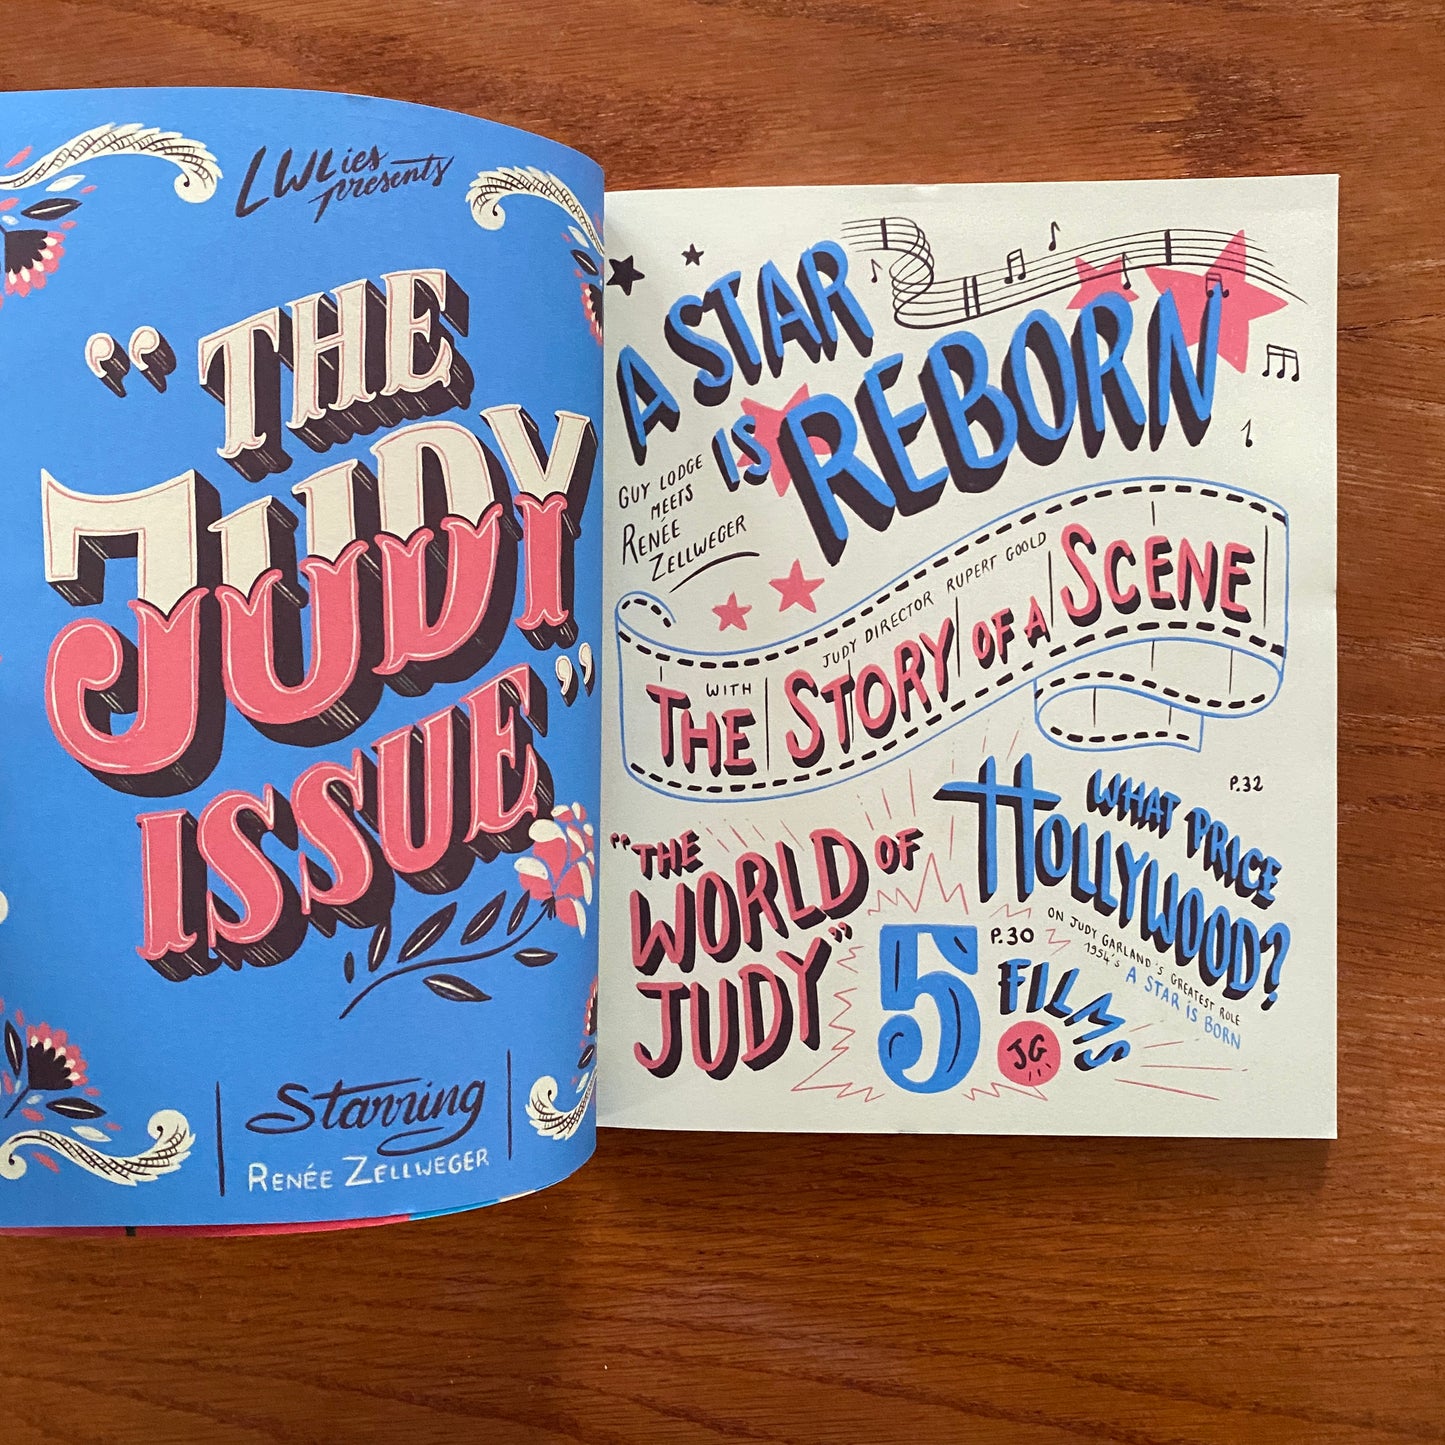 Issue 81 - Judy